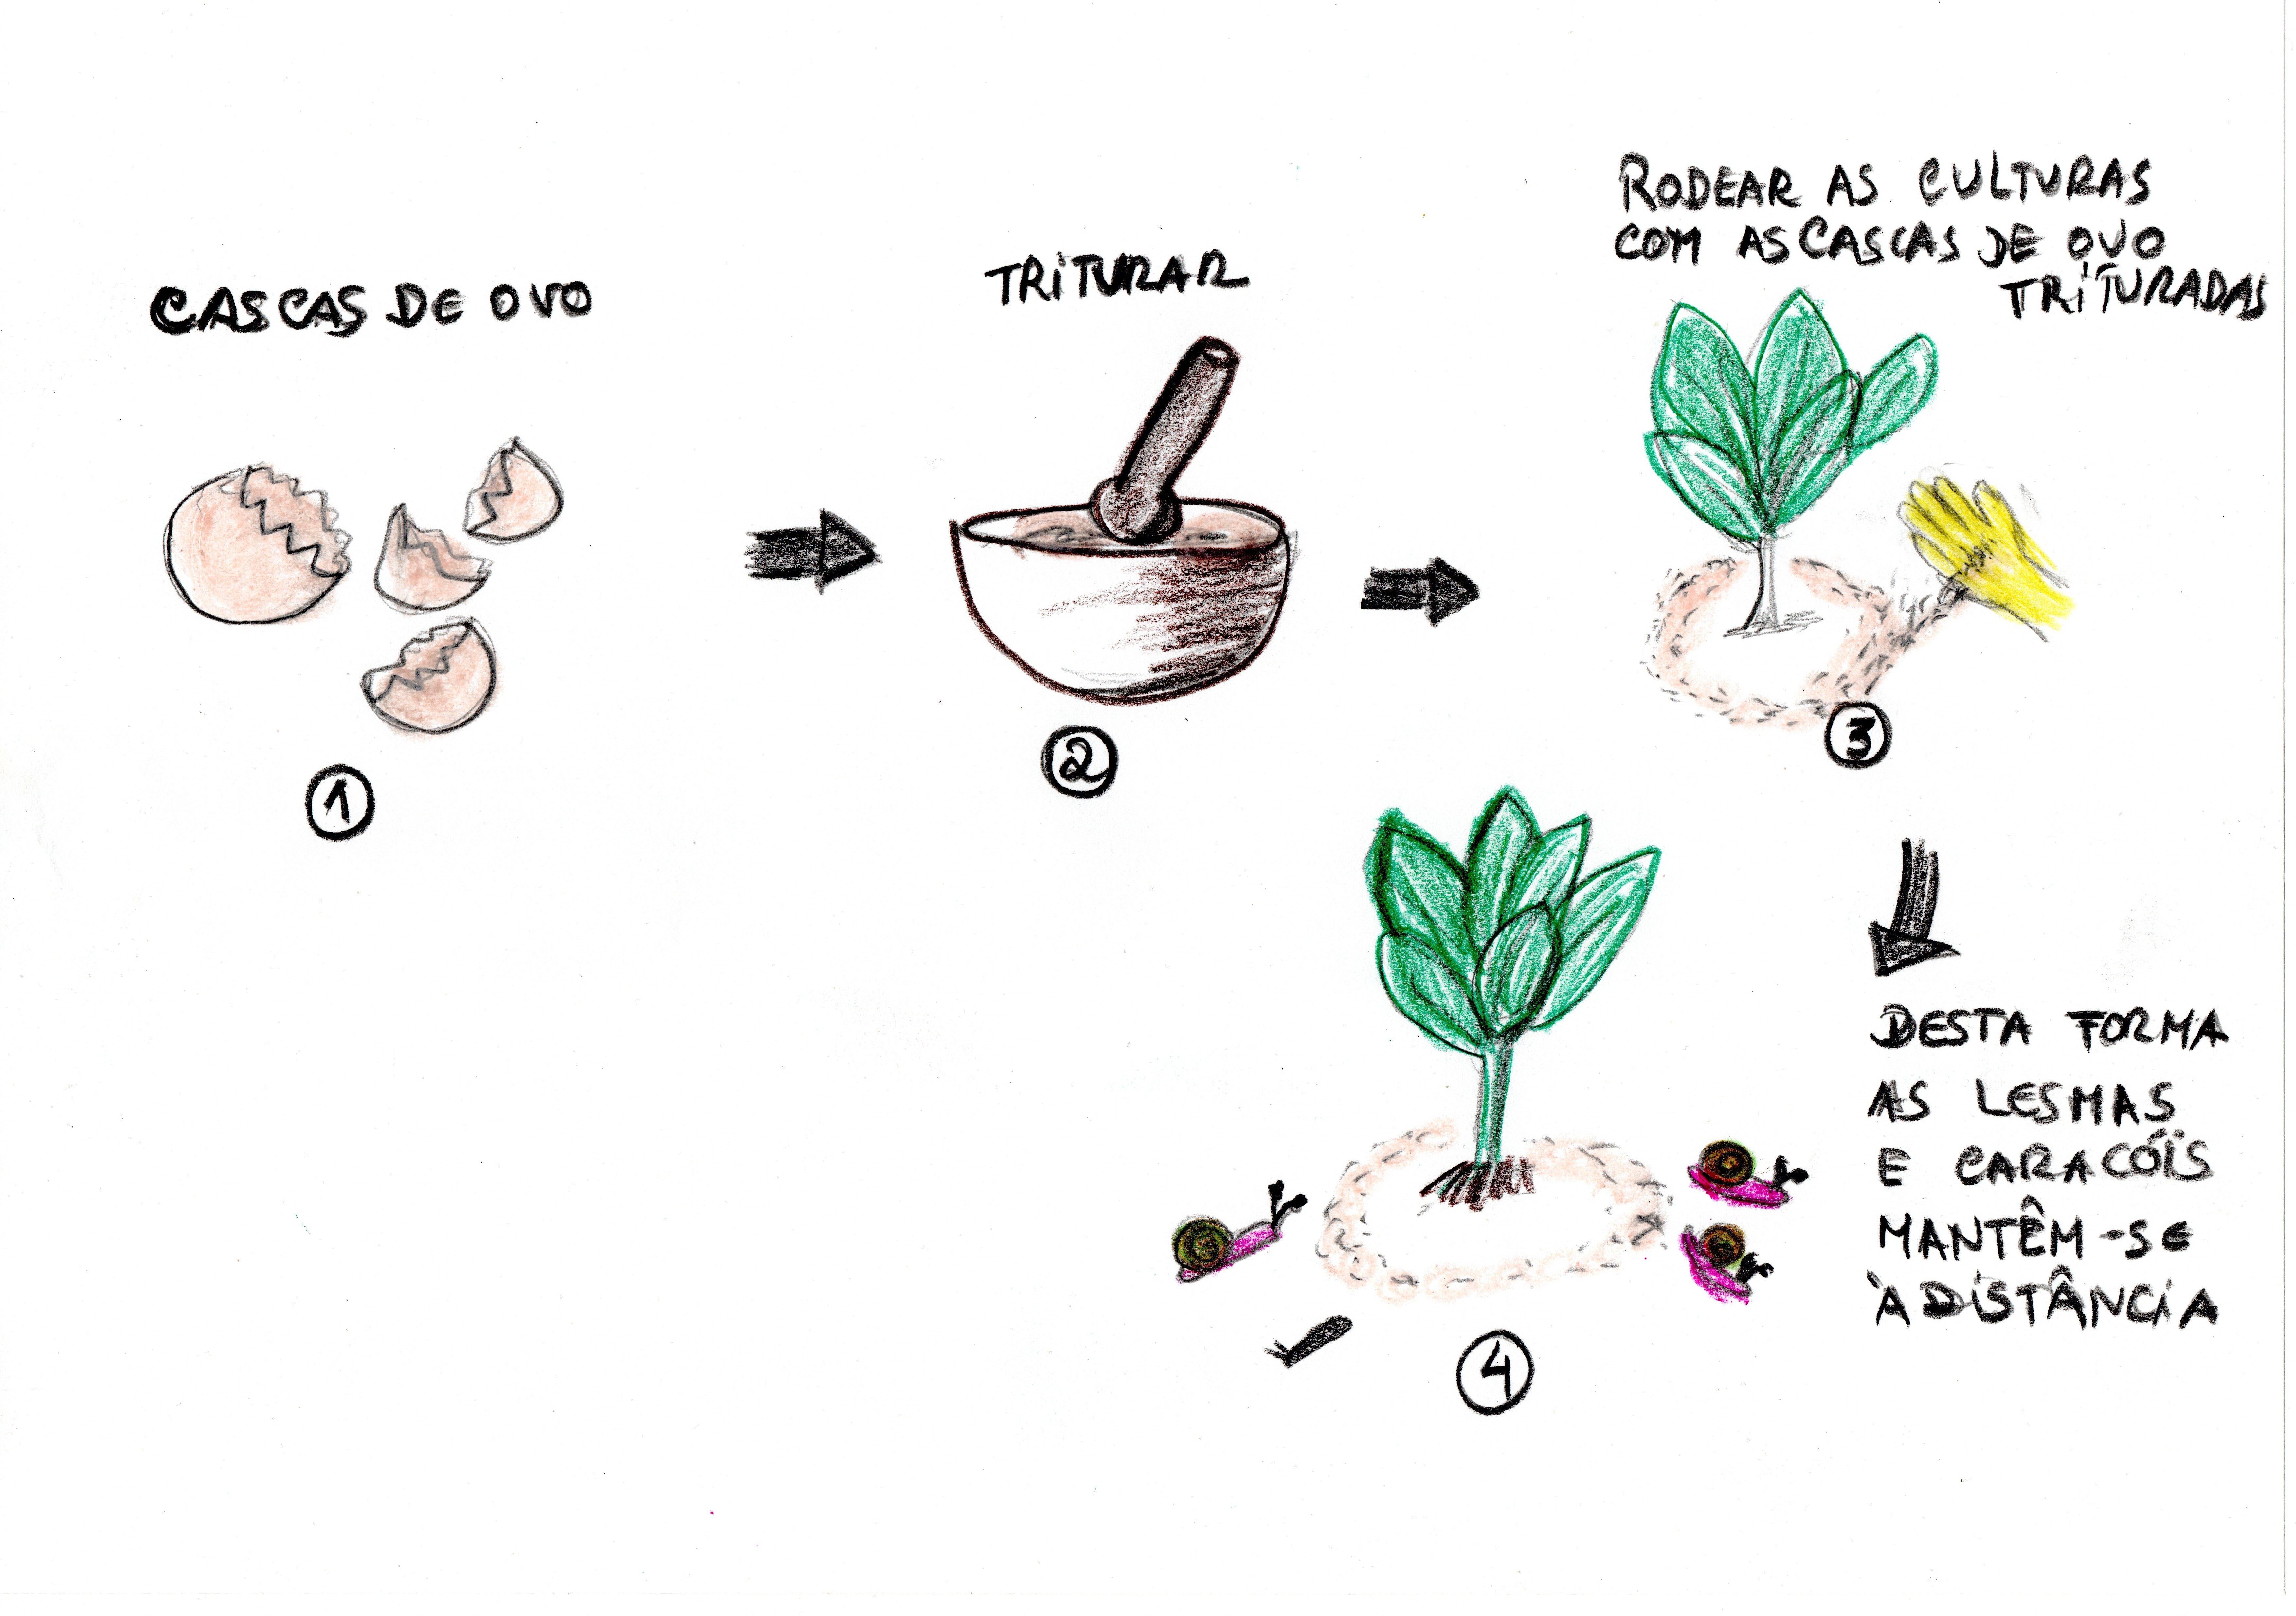 Ilustração com a descrição dos passos necessários para o uso das cascas de ovo trituradas como forma de afastar as lesmas e caracóis.